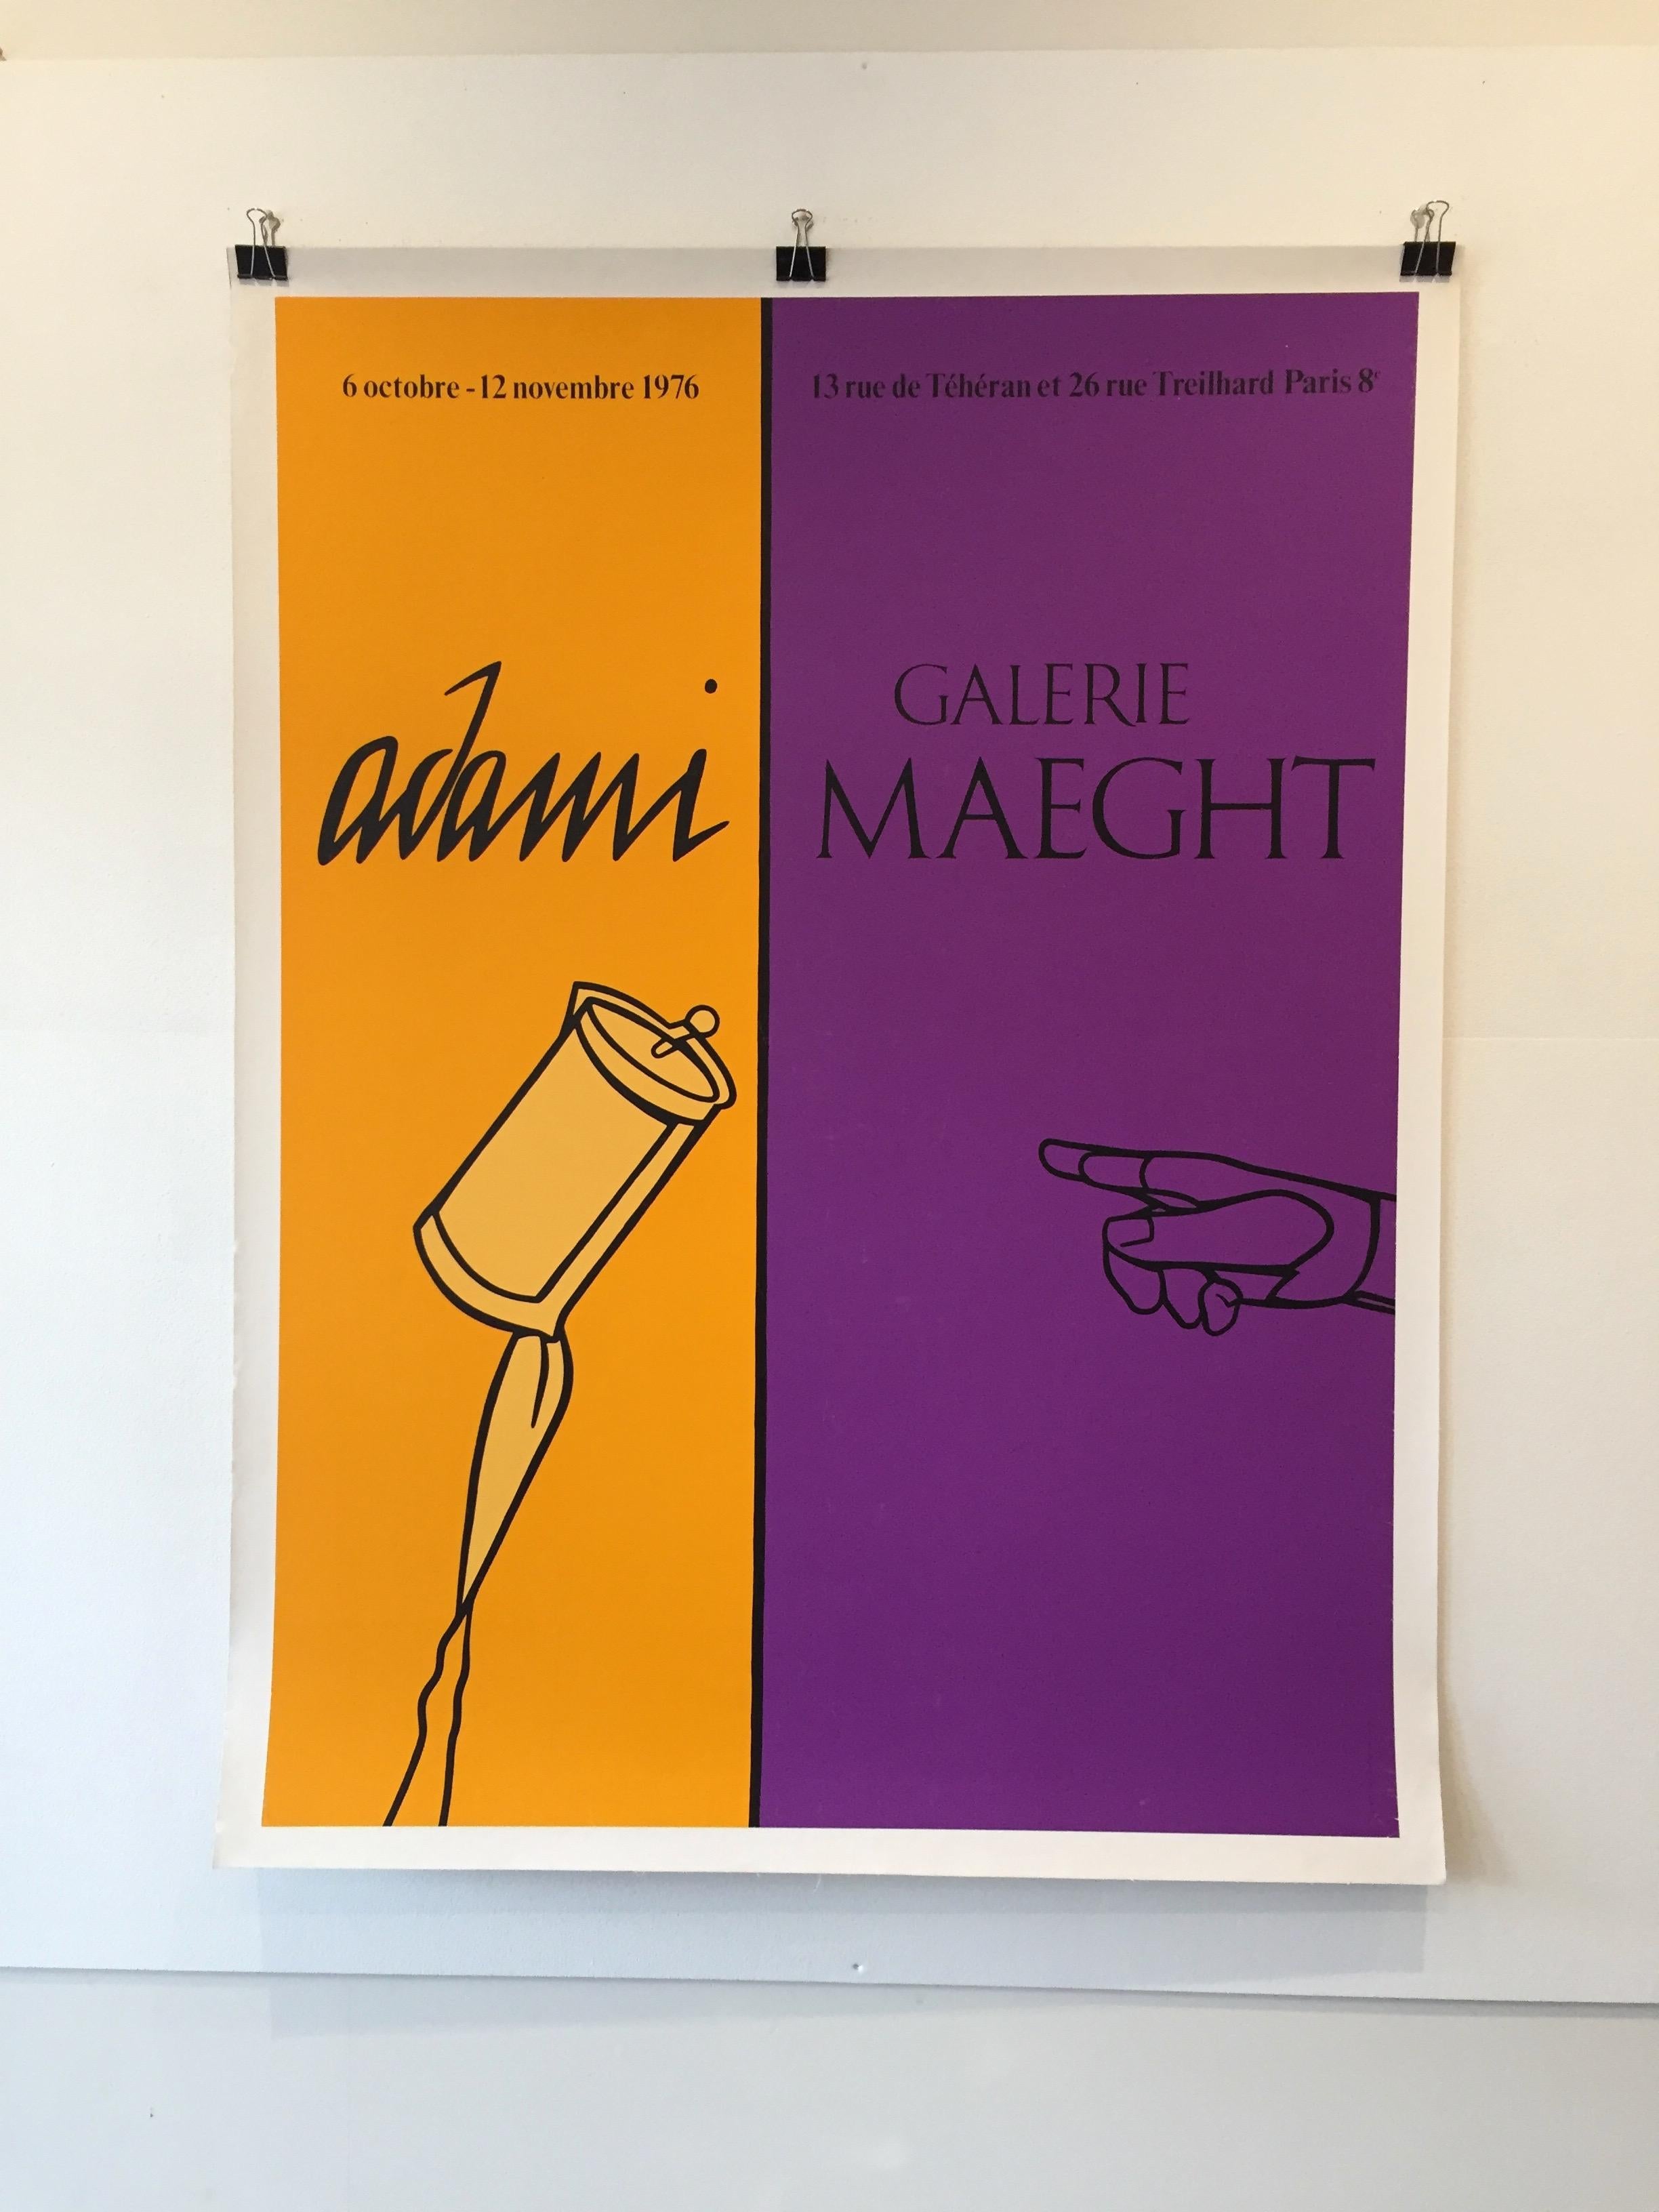 Pop-Art-Ausstellungsplakat, 'Adami' 1976, Galerie Maeght

Originalplakat aus dem Jahr 1976, das für das Werk des berühmten spanischen Pop-Künstlers Adami wirbt.


Künstler: 
V Adami

Jahr: 
1976

Abmessungen: 
166 x 126cm

Zustand: